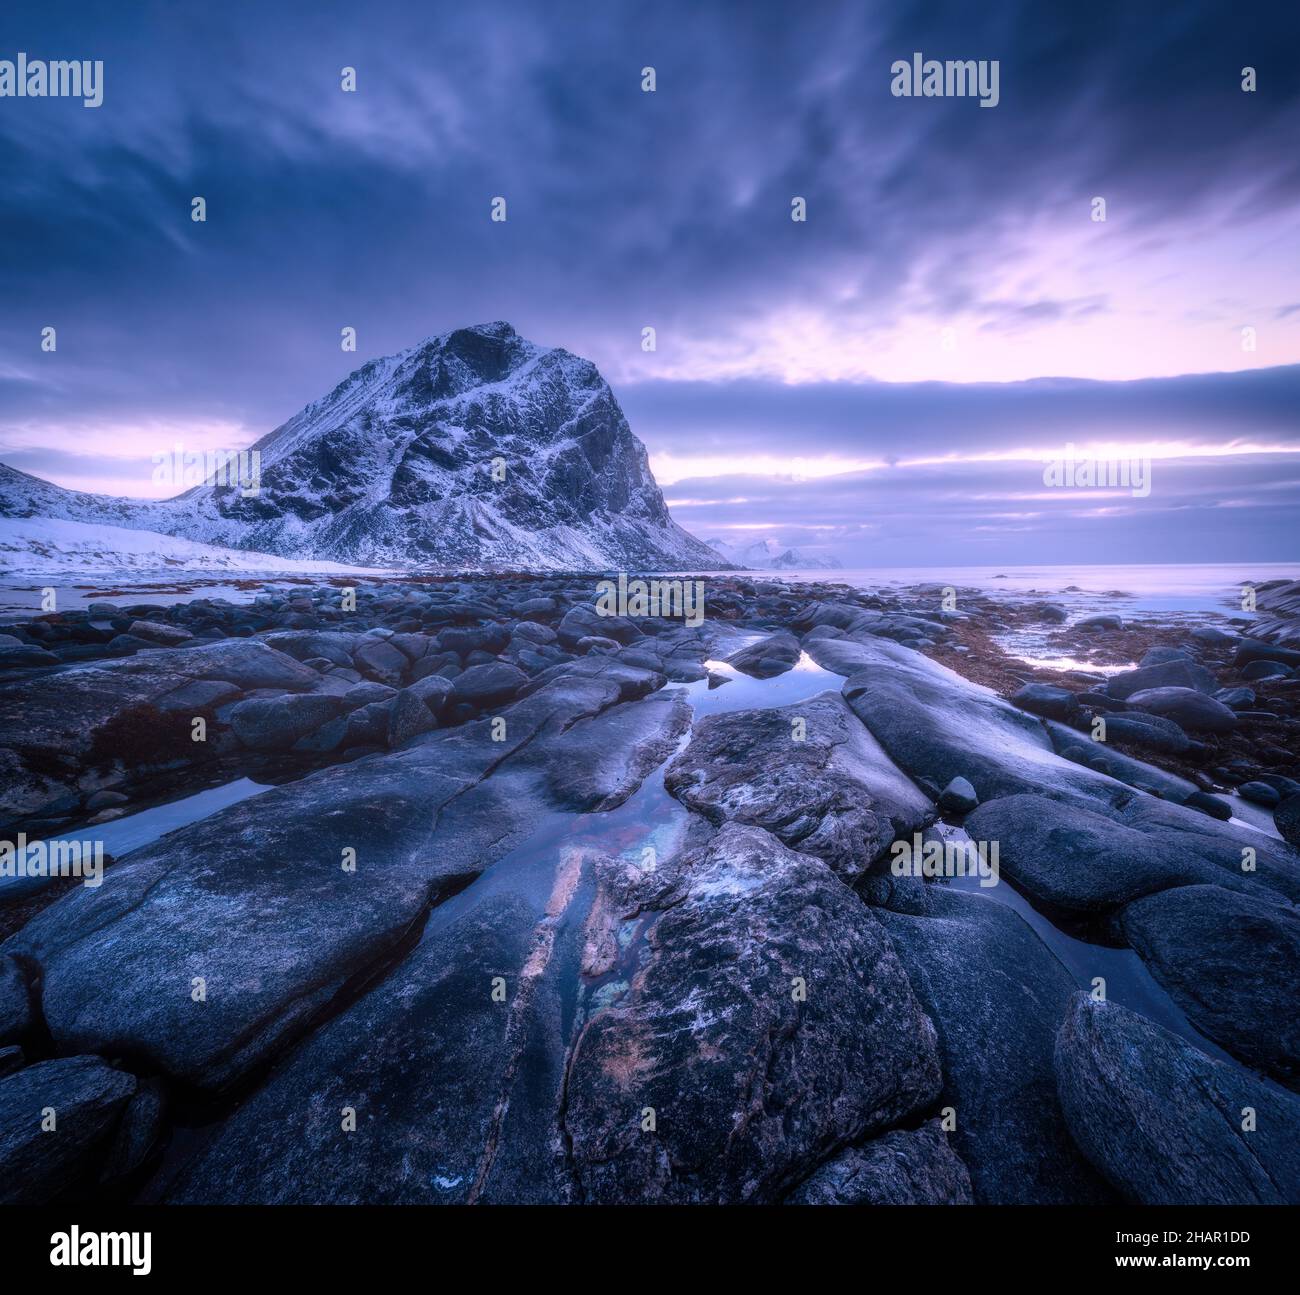 Bord de mer avec pierres et eau floue, contre les montagnes enneigées Banque D'Images